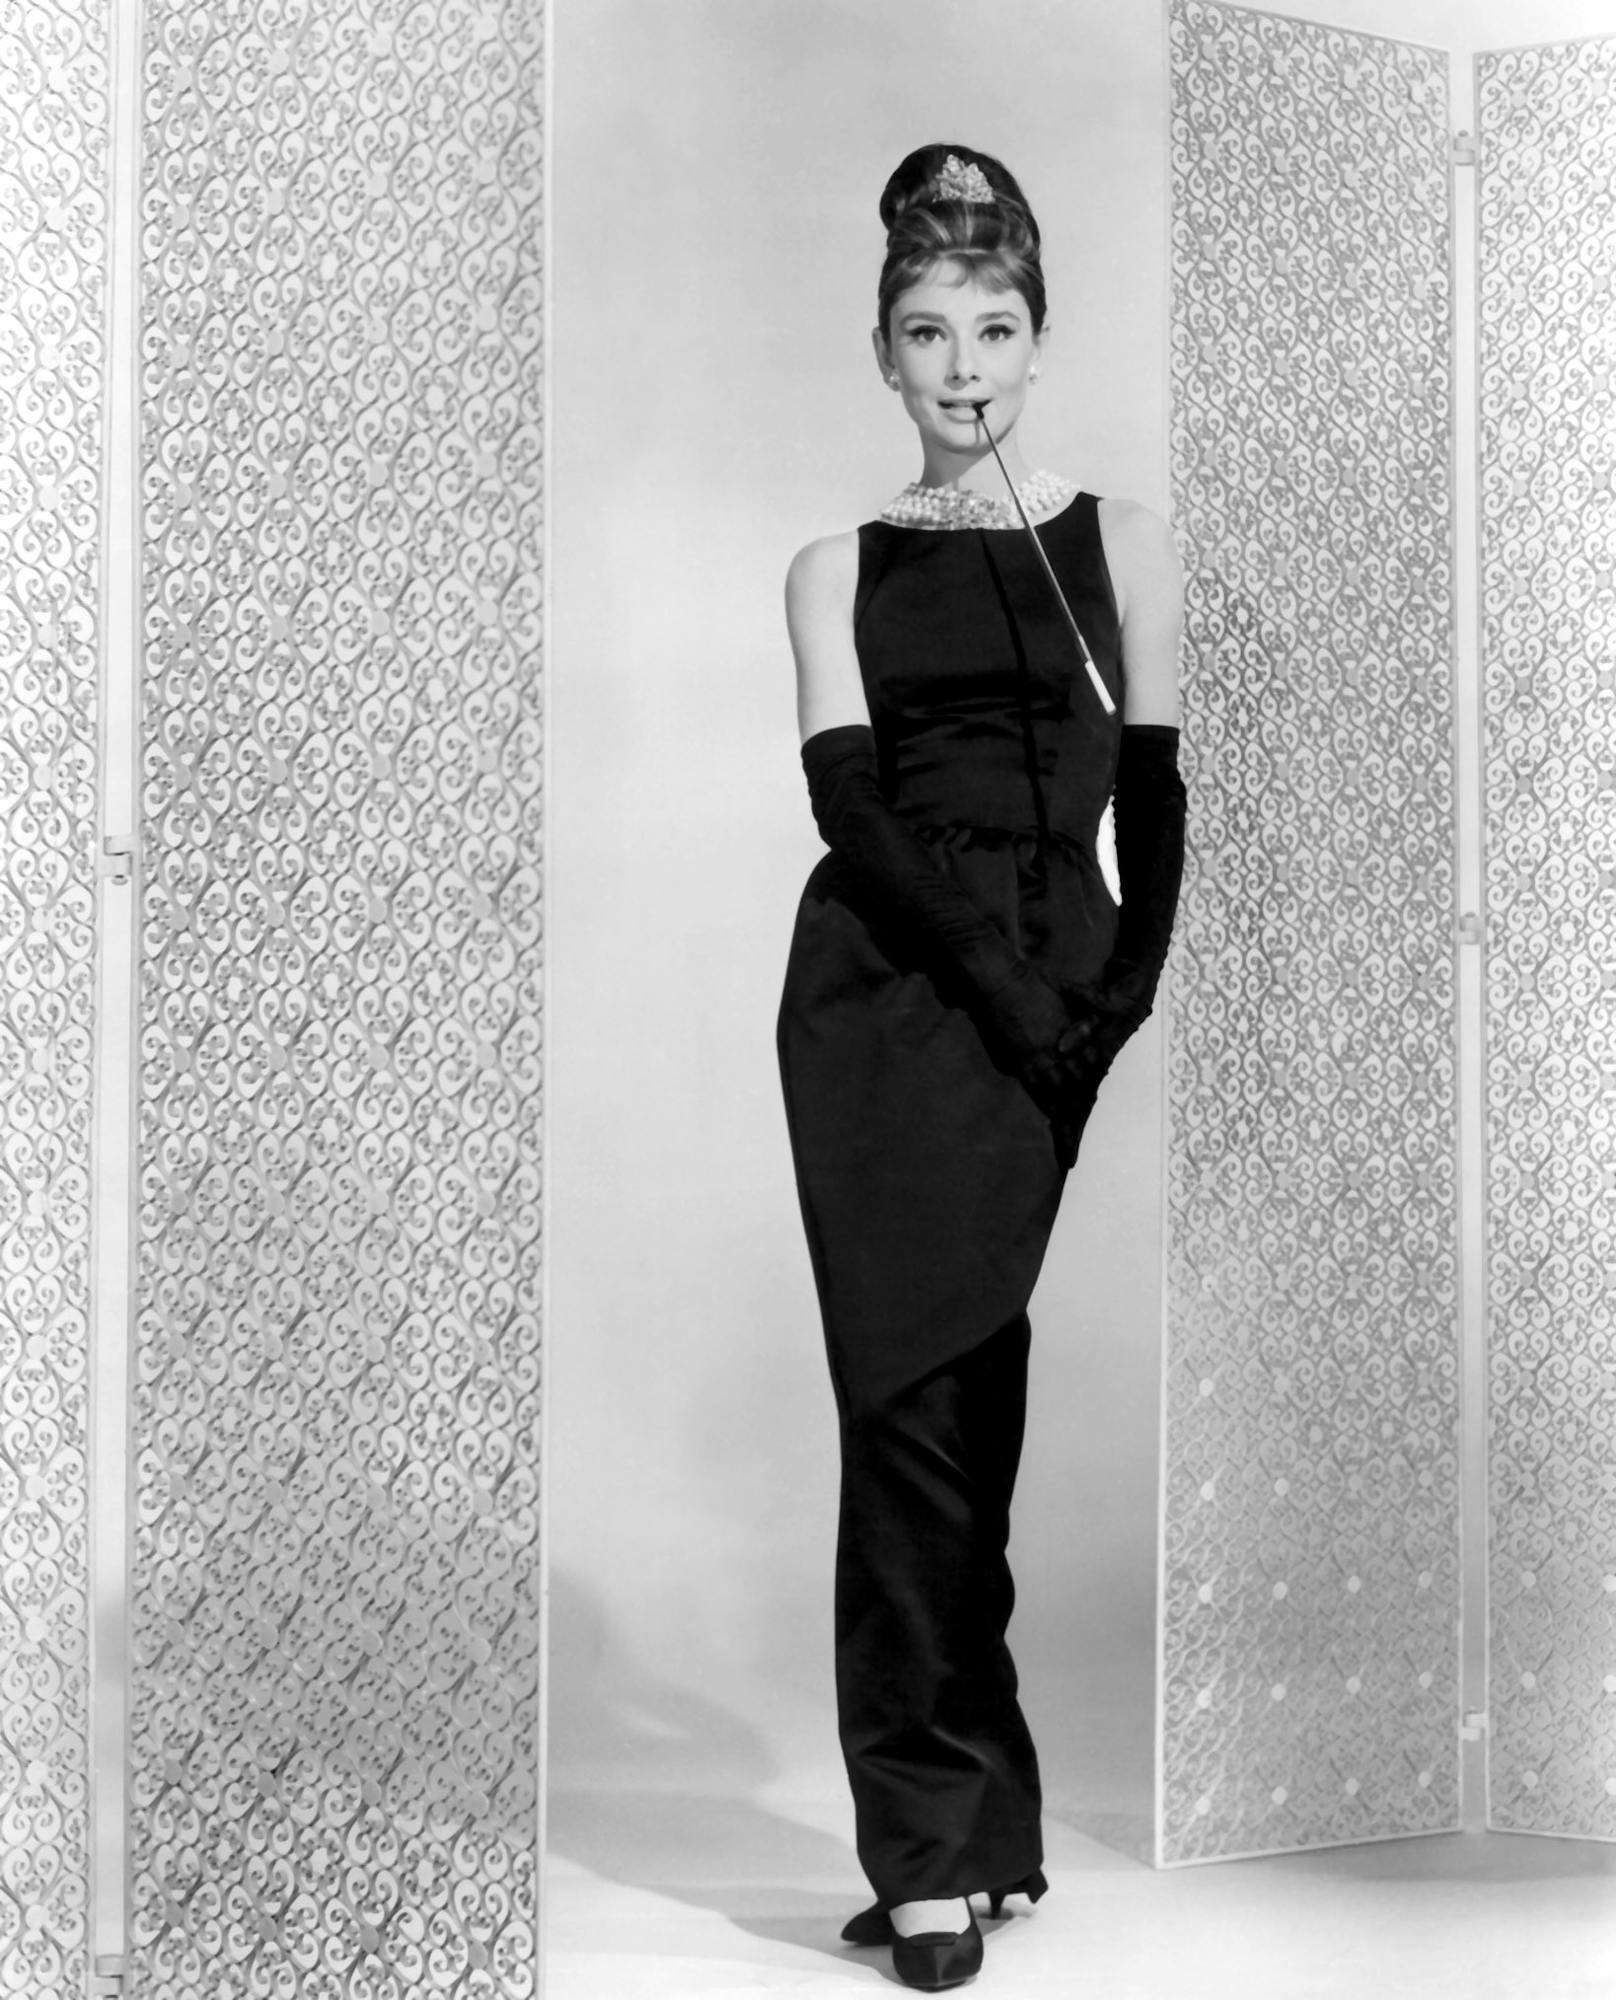 Der 34-jährige Kalifornier tritt bei dem Lieblingslabel von&nbsp;Audrey Hepburn - hier in dem berühmten Givenchy-Kleid asu "Breakfast at Tiffany's" - in große Fußstapfen.